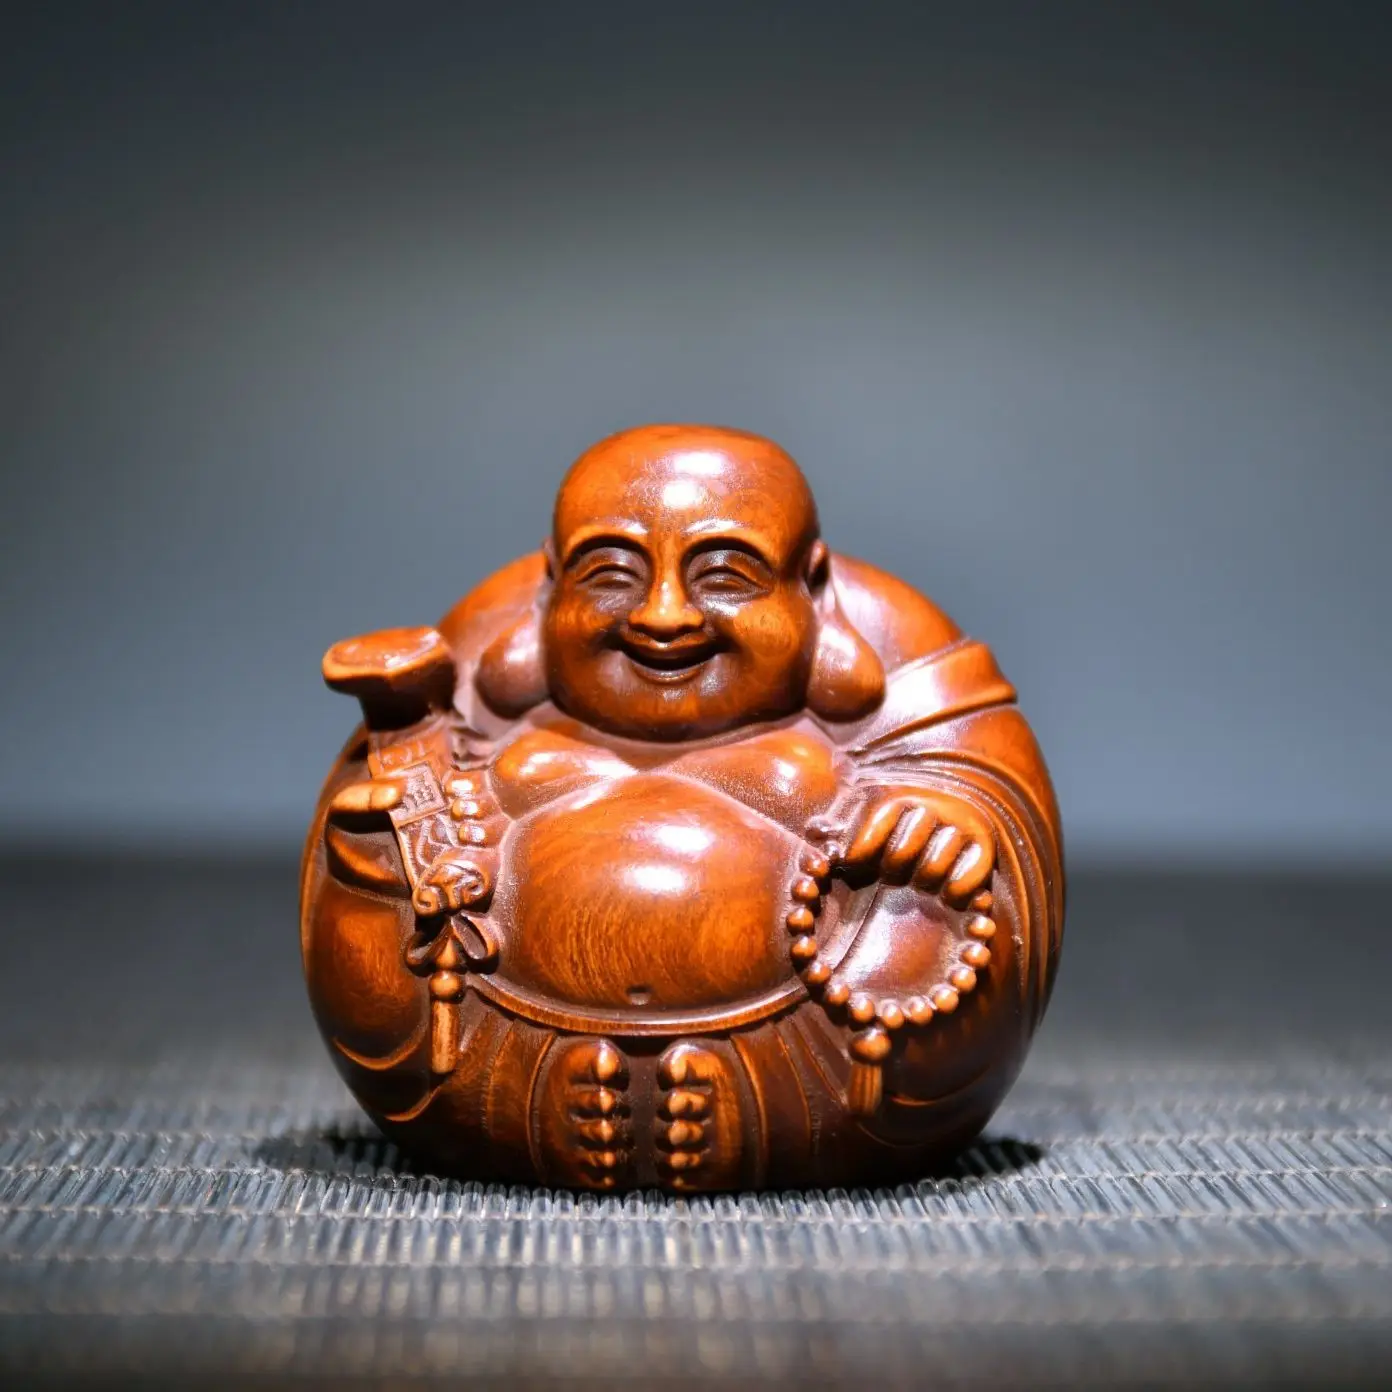 

Китайская статуя Будды из смеха, деревянная резьба, буддийская скульптура Будды из матреи, домашнее украшение, маленькая статуя